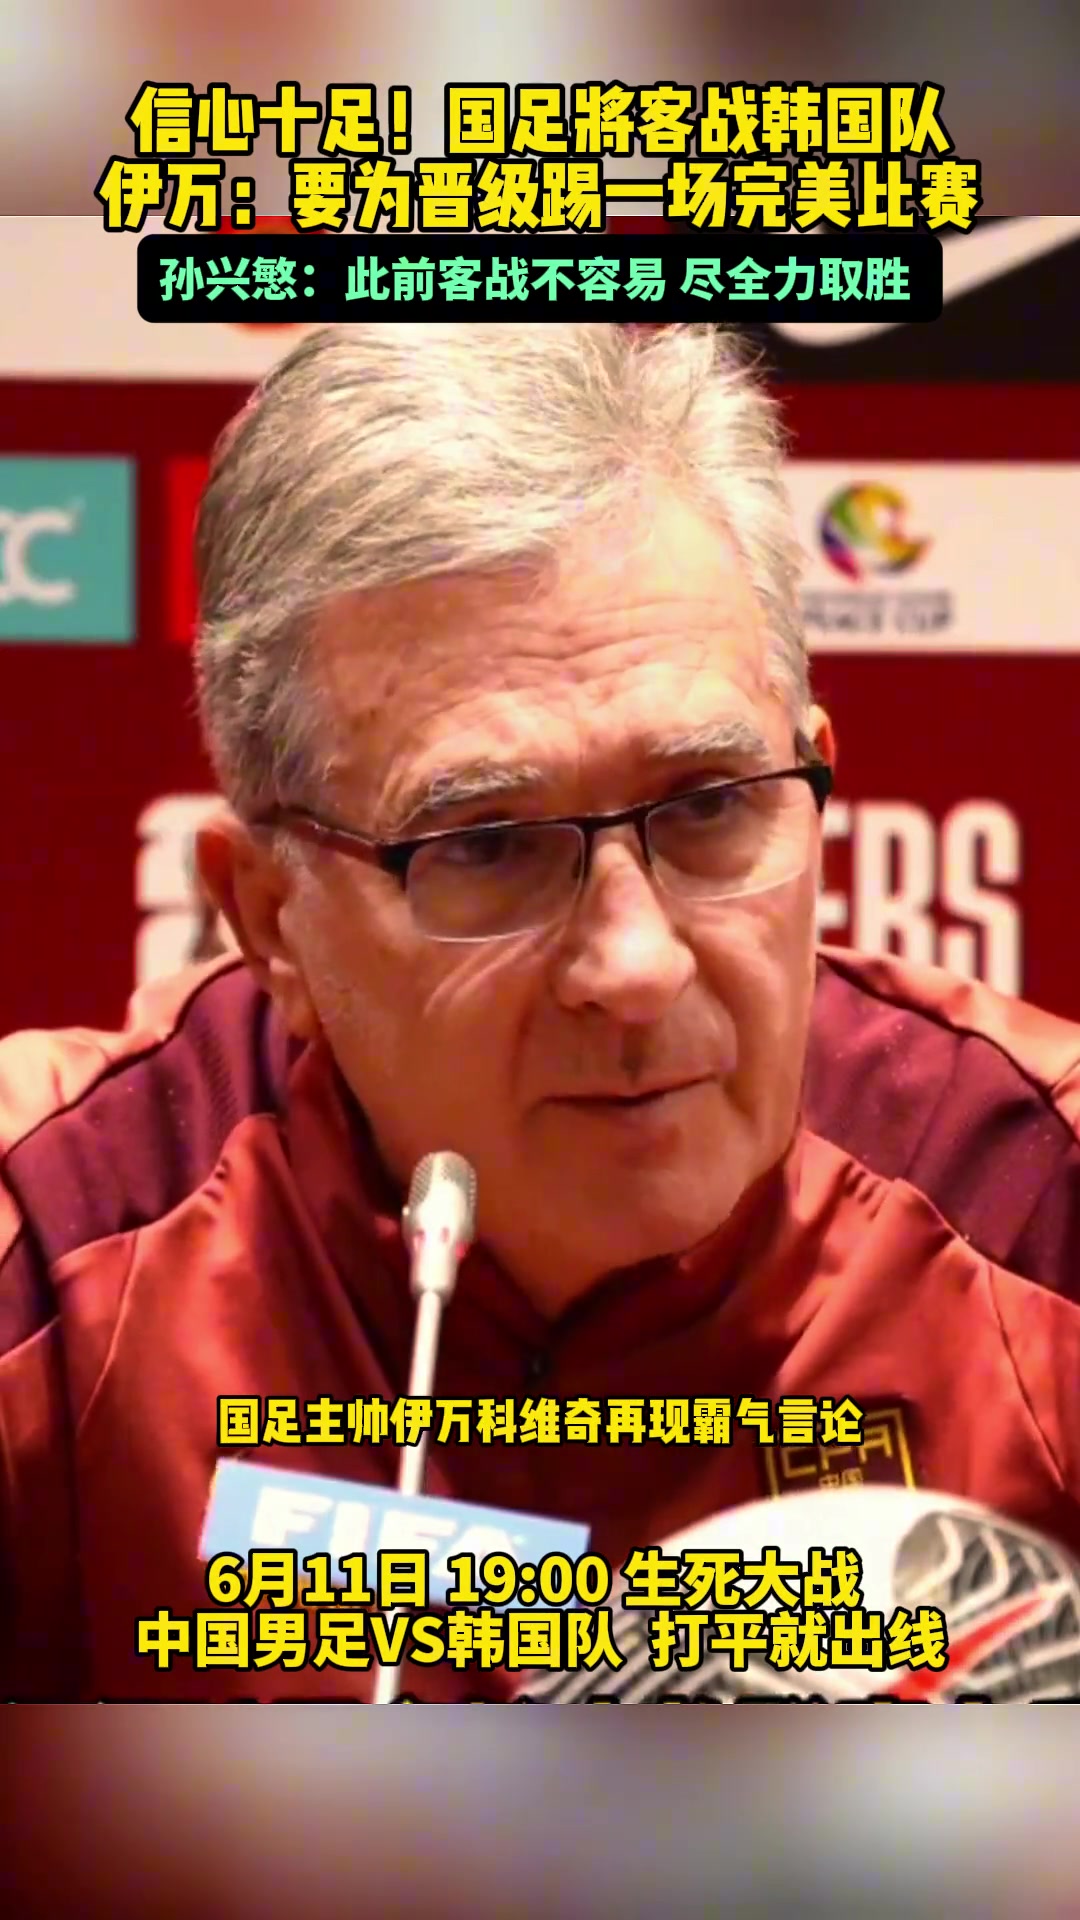 伊万：不是来韩国旅游的，要为晋级踢一场完美比赛